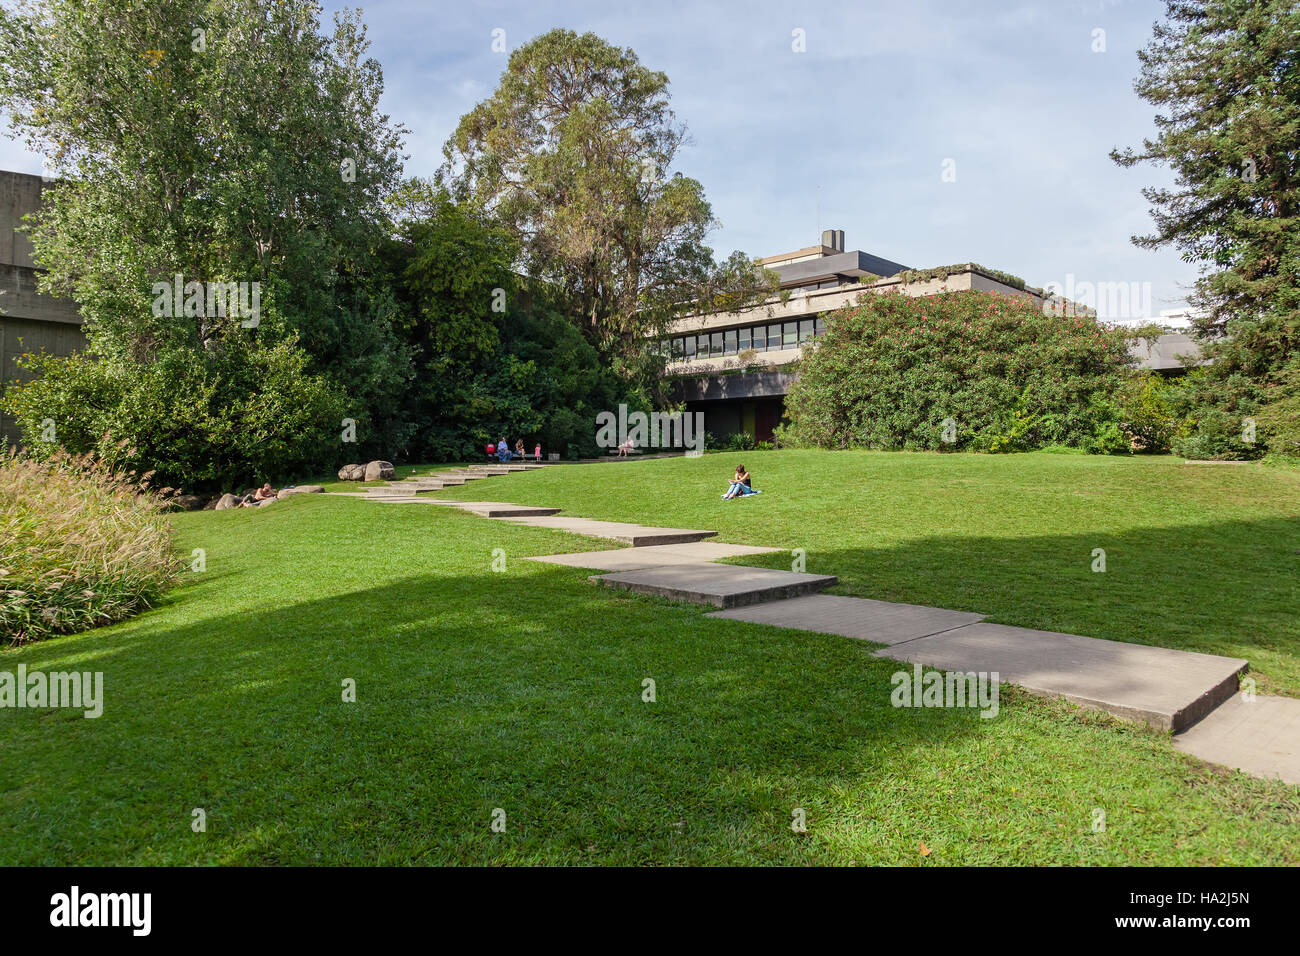 Calouste Gulbenkian Foundation. Das Auditorium in den Garten zu sehen. Ein sehr beliebter städtischer Park für die Öffentlichkeit zugänglich. Stockfoto